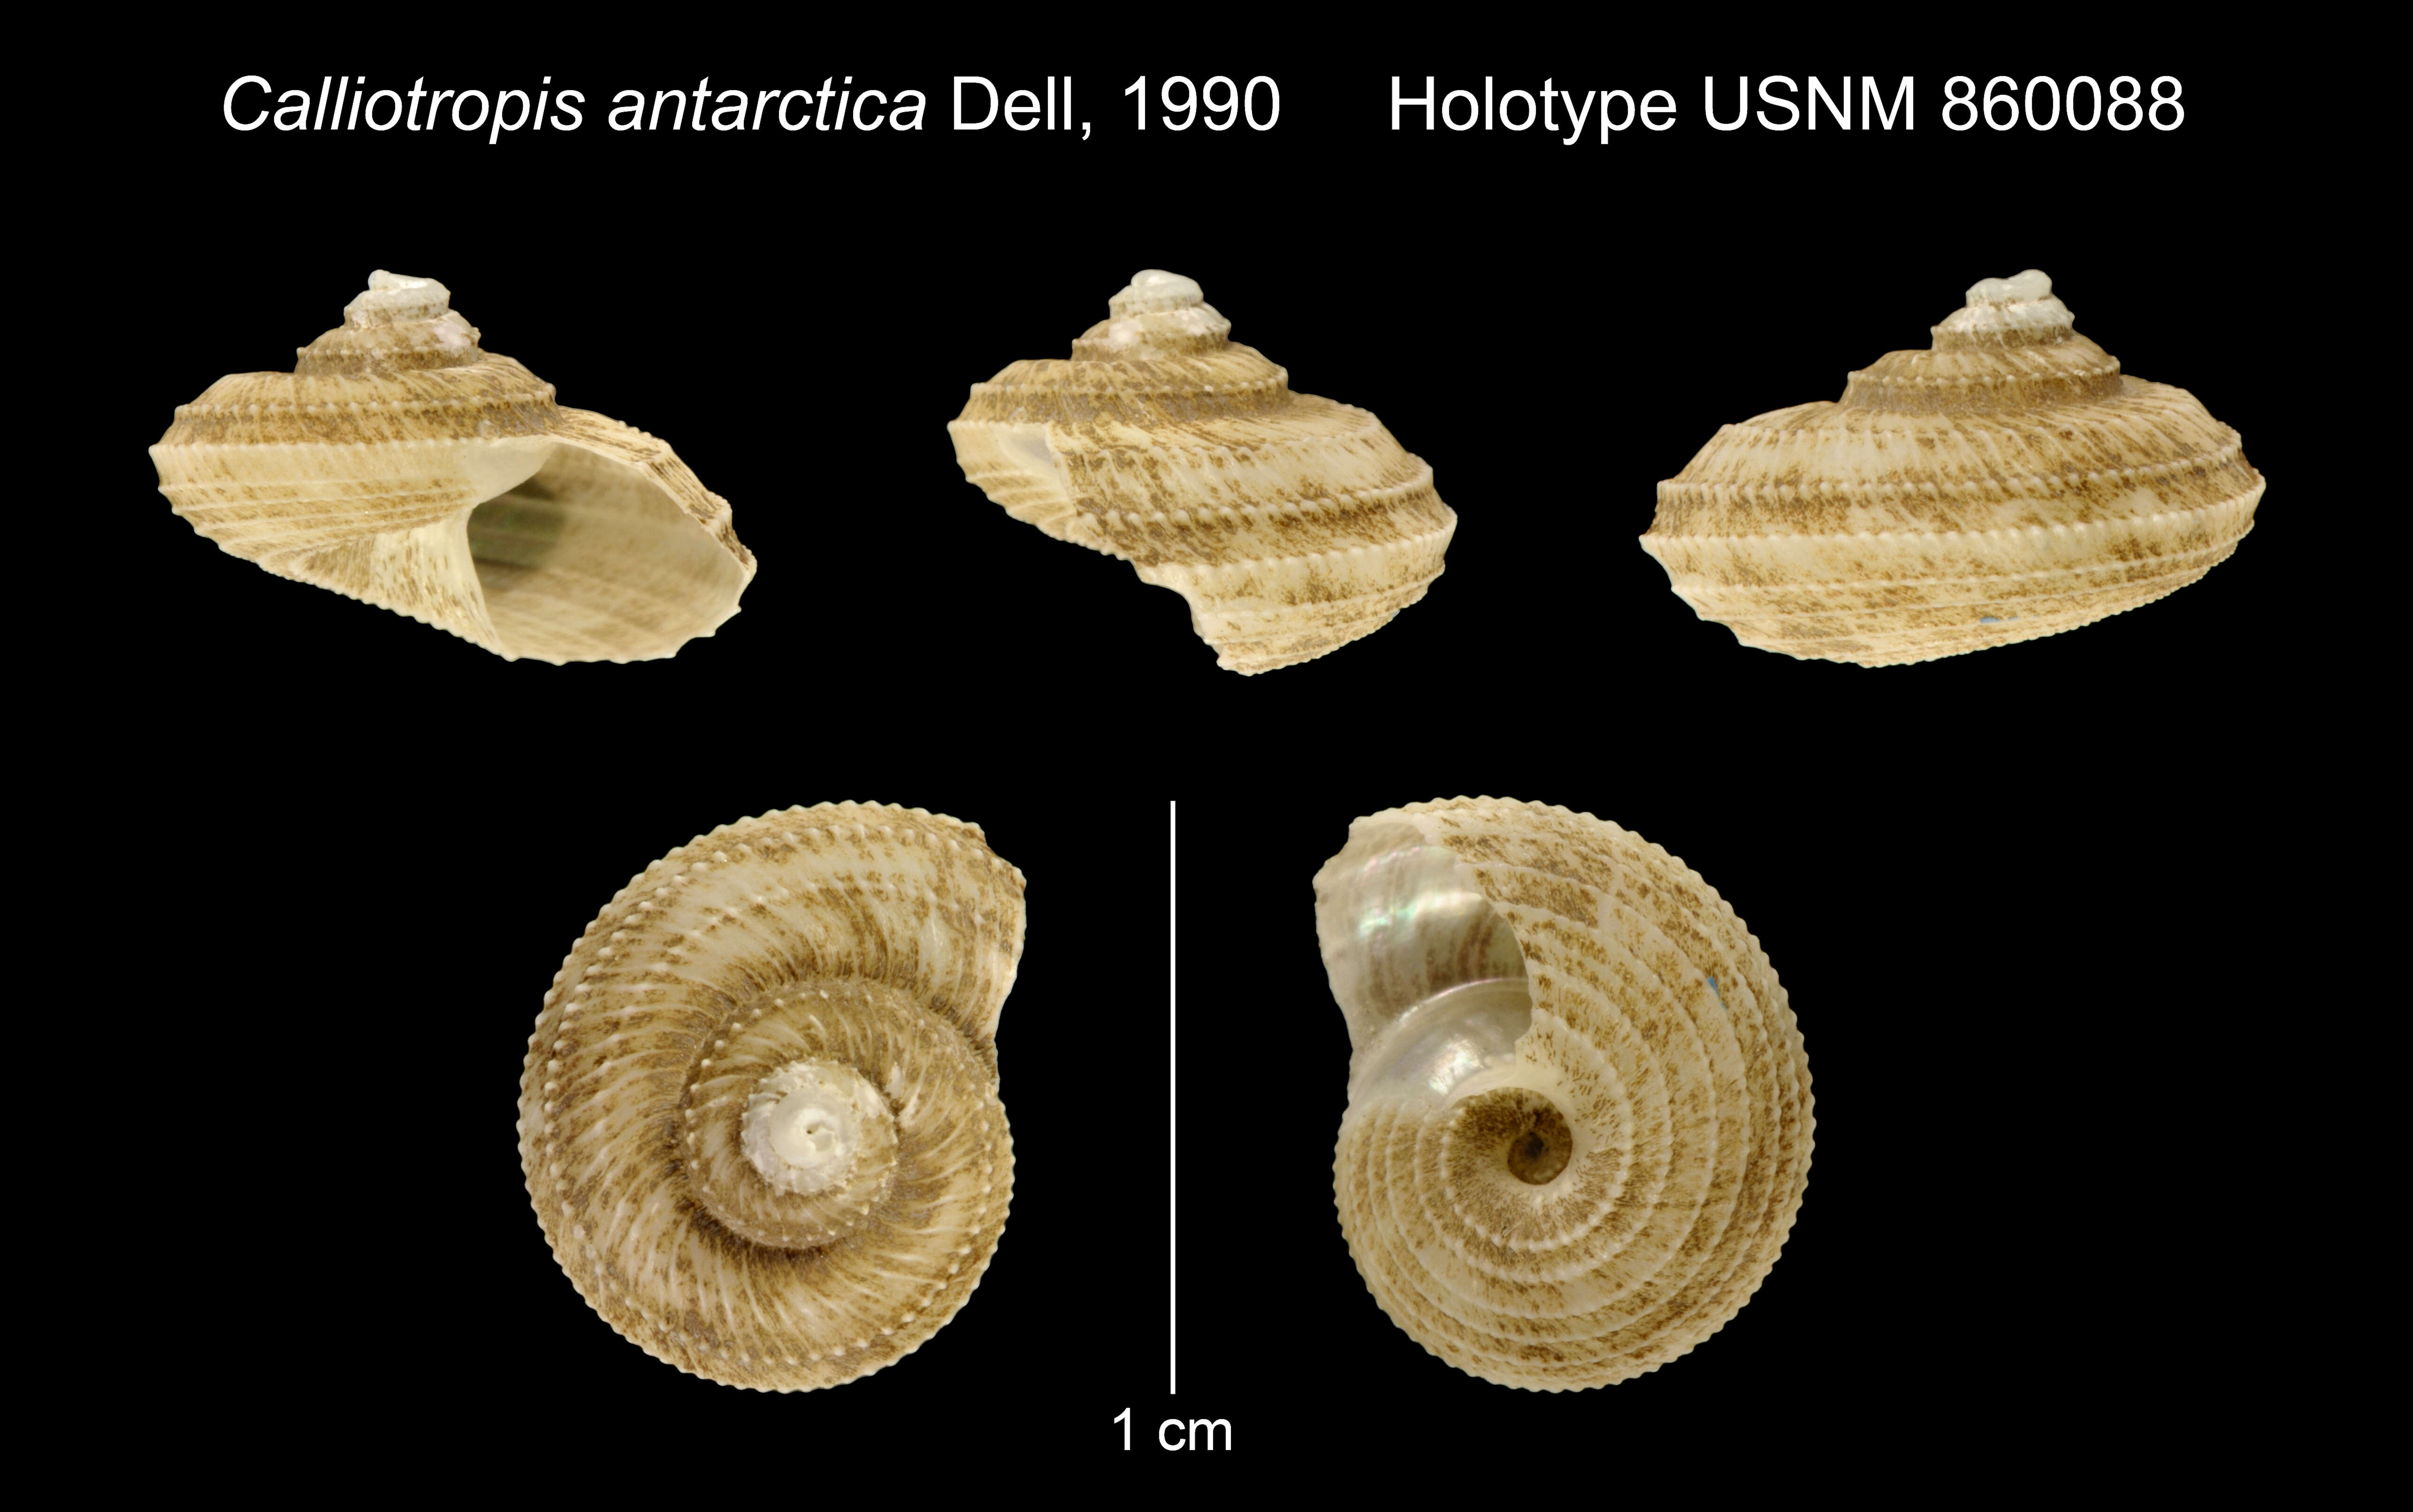 Image of Calliotropis antarctica Dell 1990